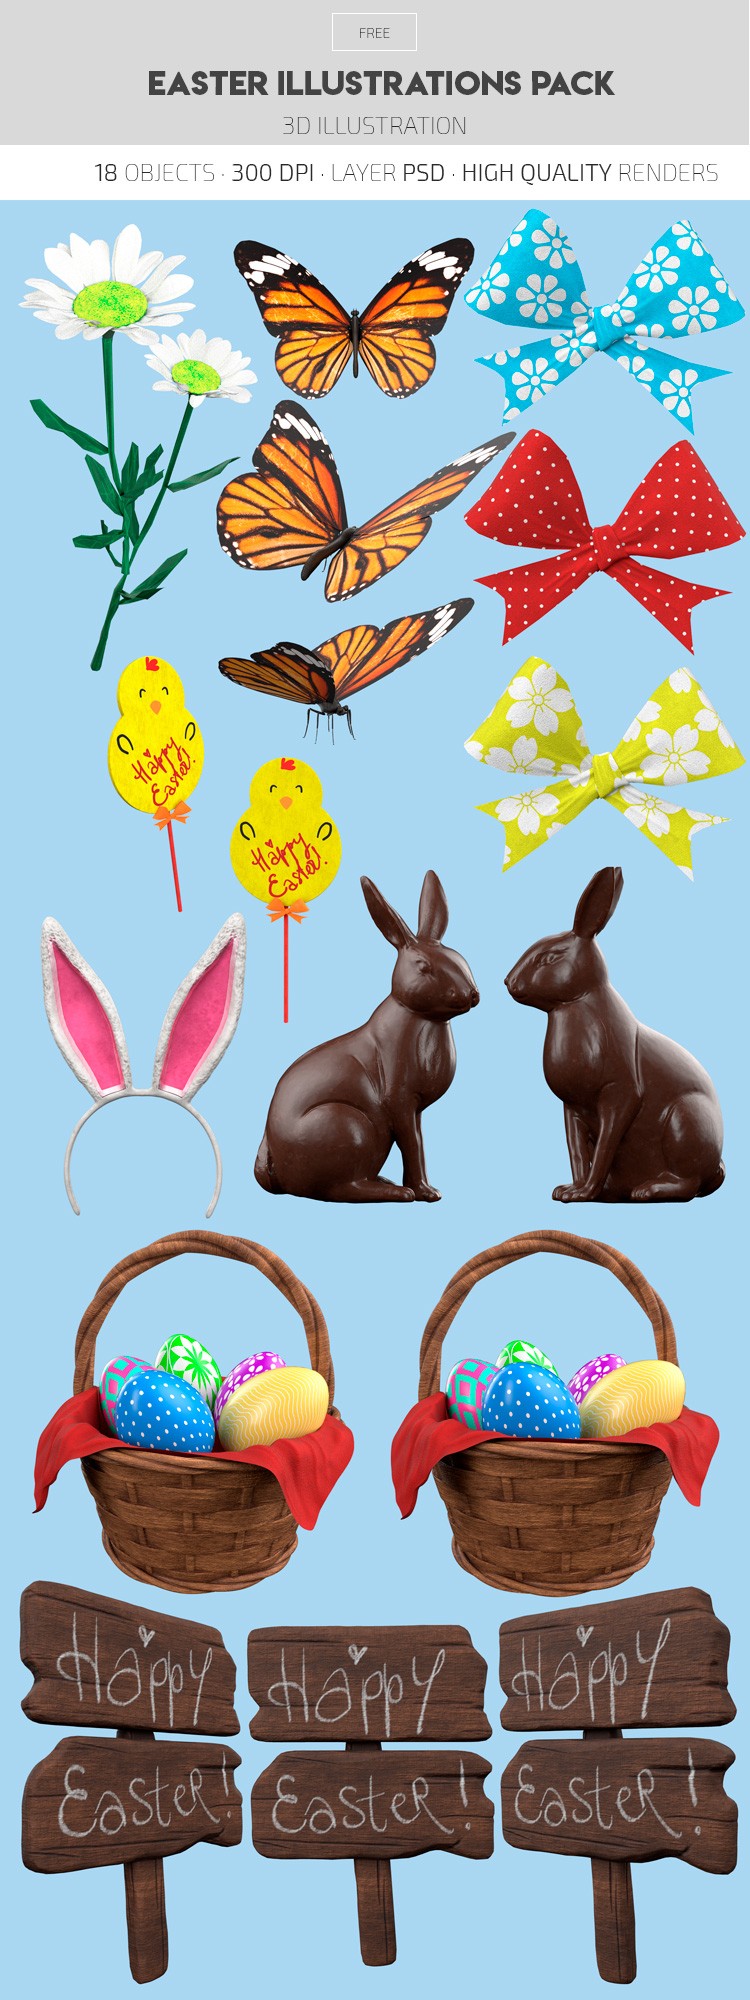 Easter Illustrations Pack - Free 3D Illustrations by ElegantFlyer